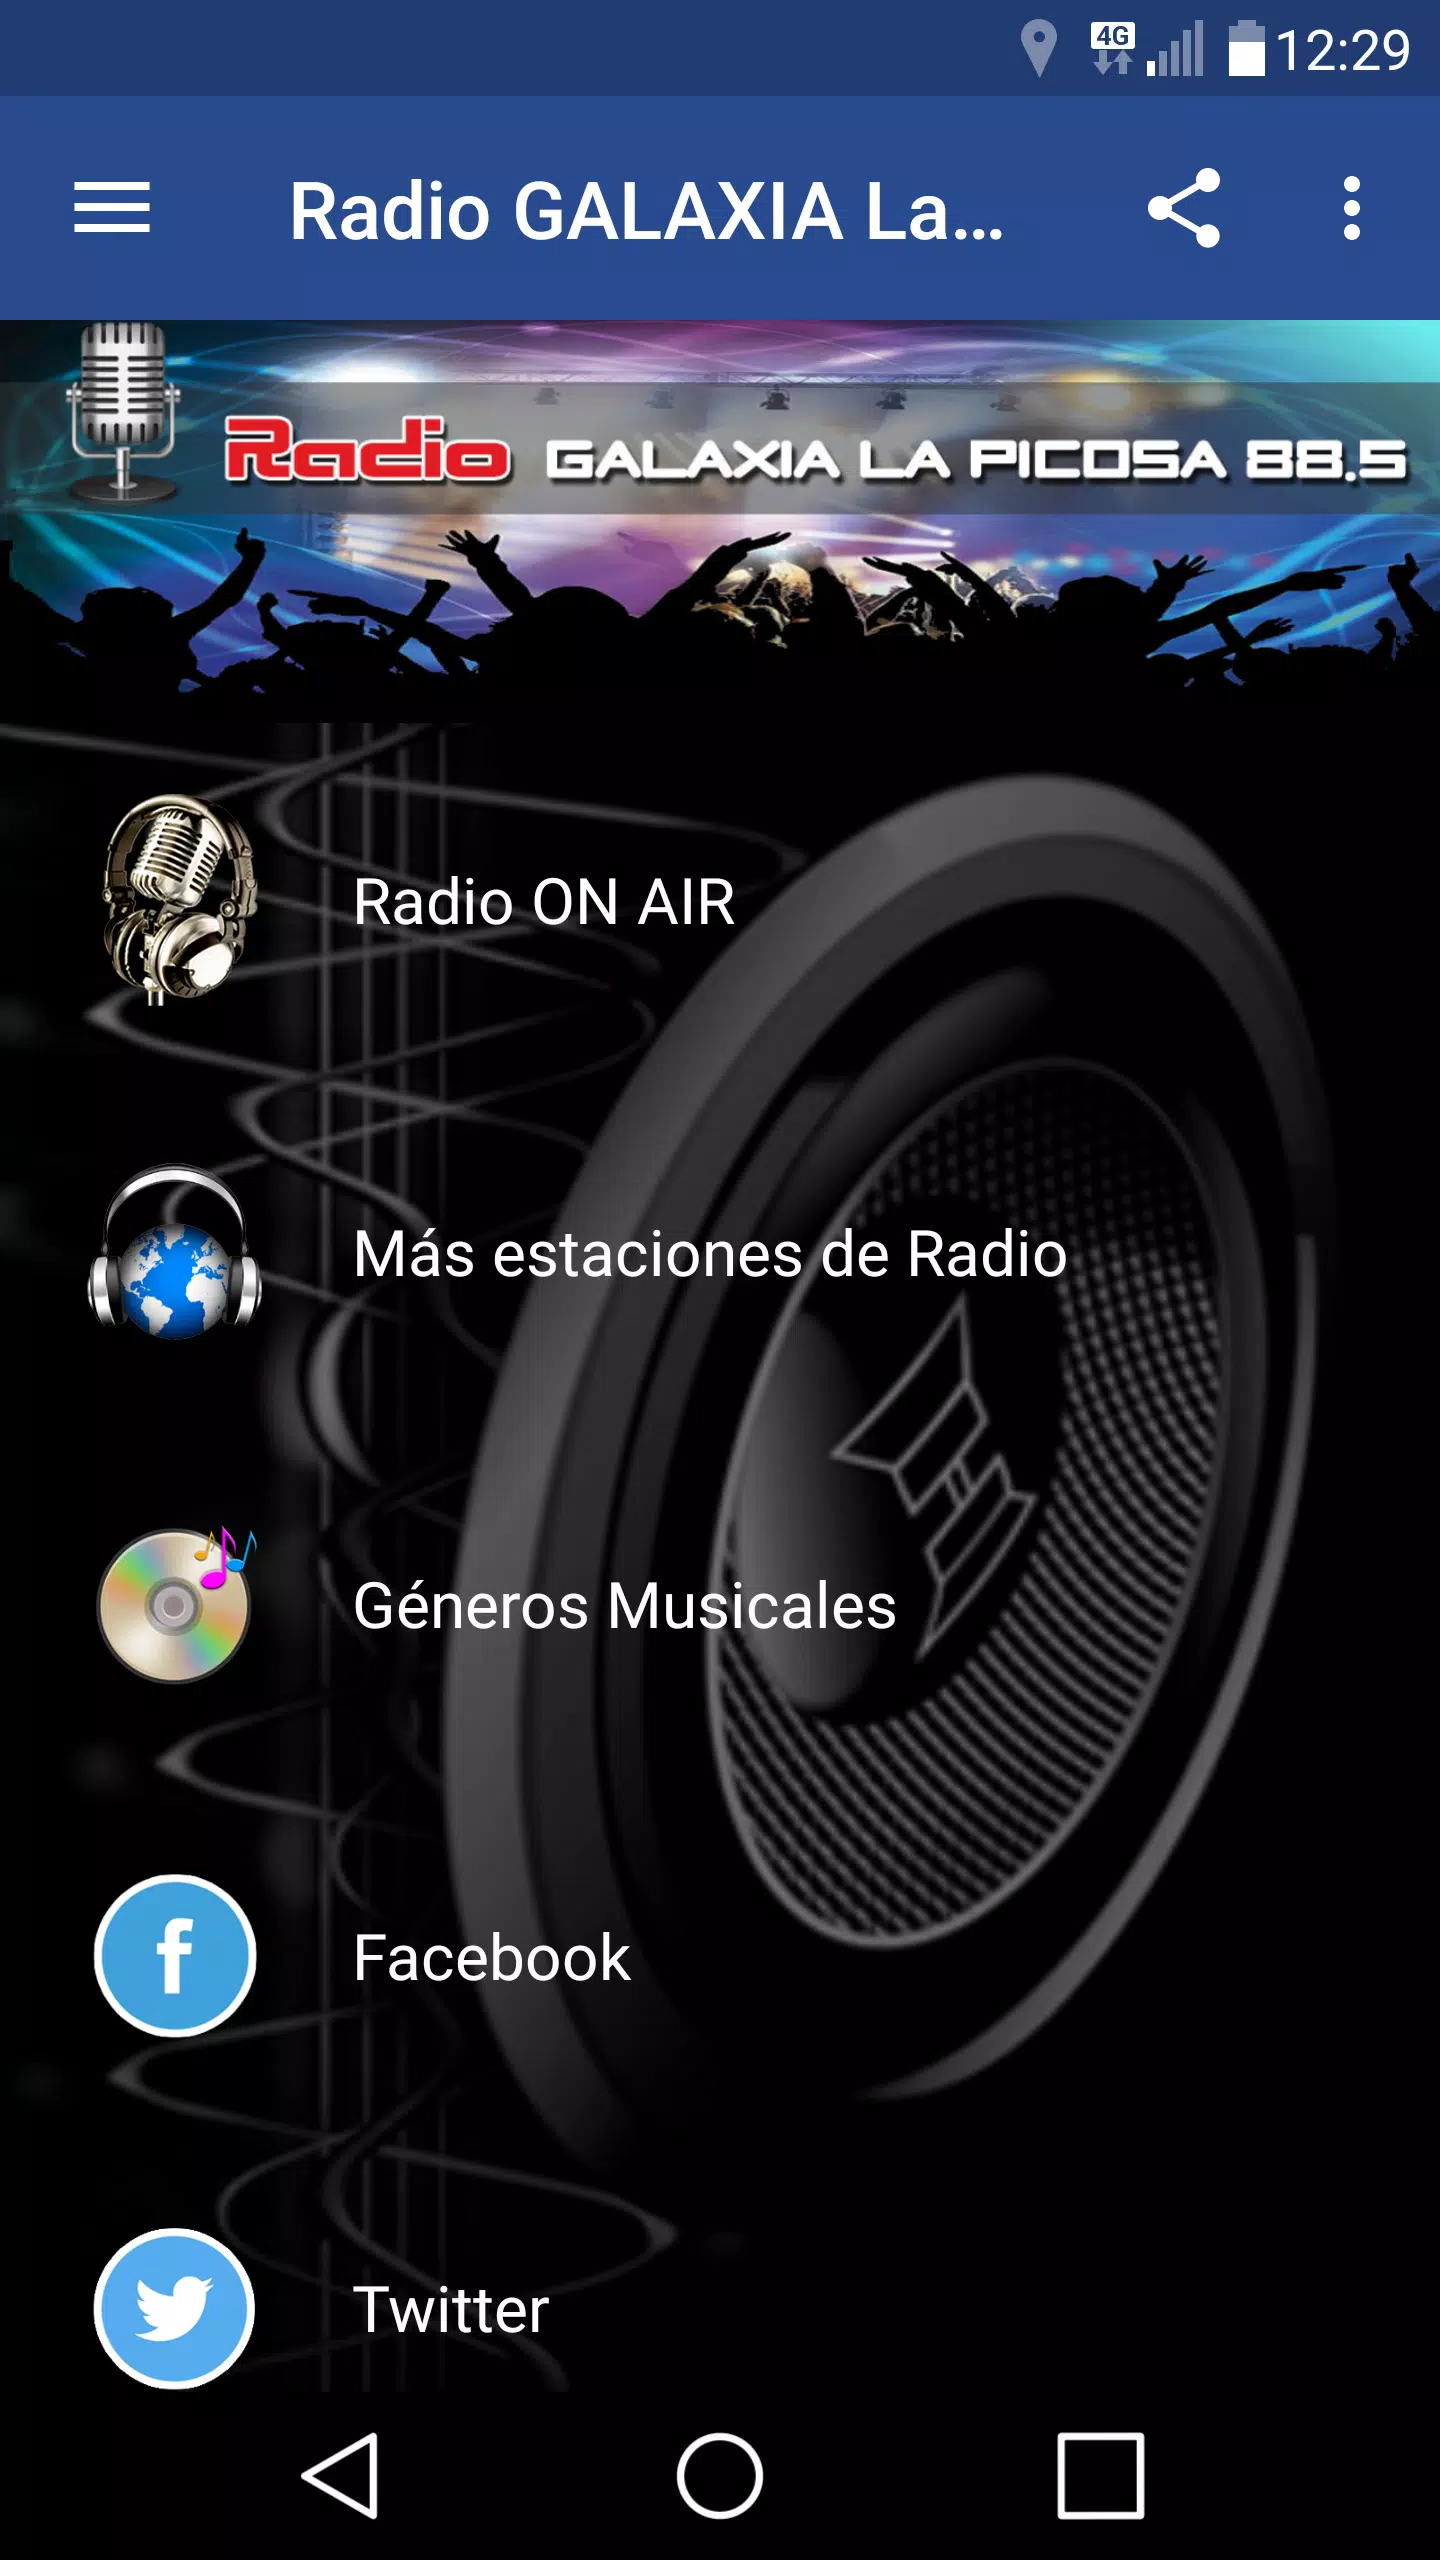 Galaxia 88.5 Radio La Picosa APK pour Android Télécharger